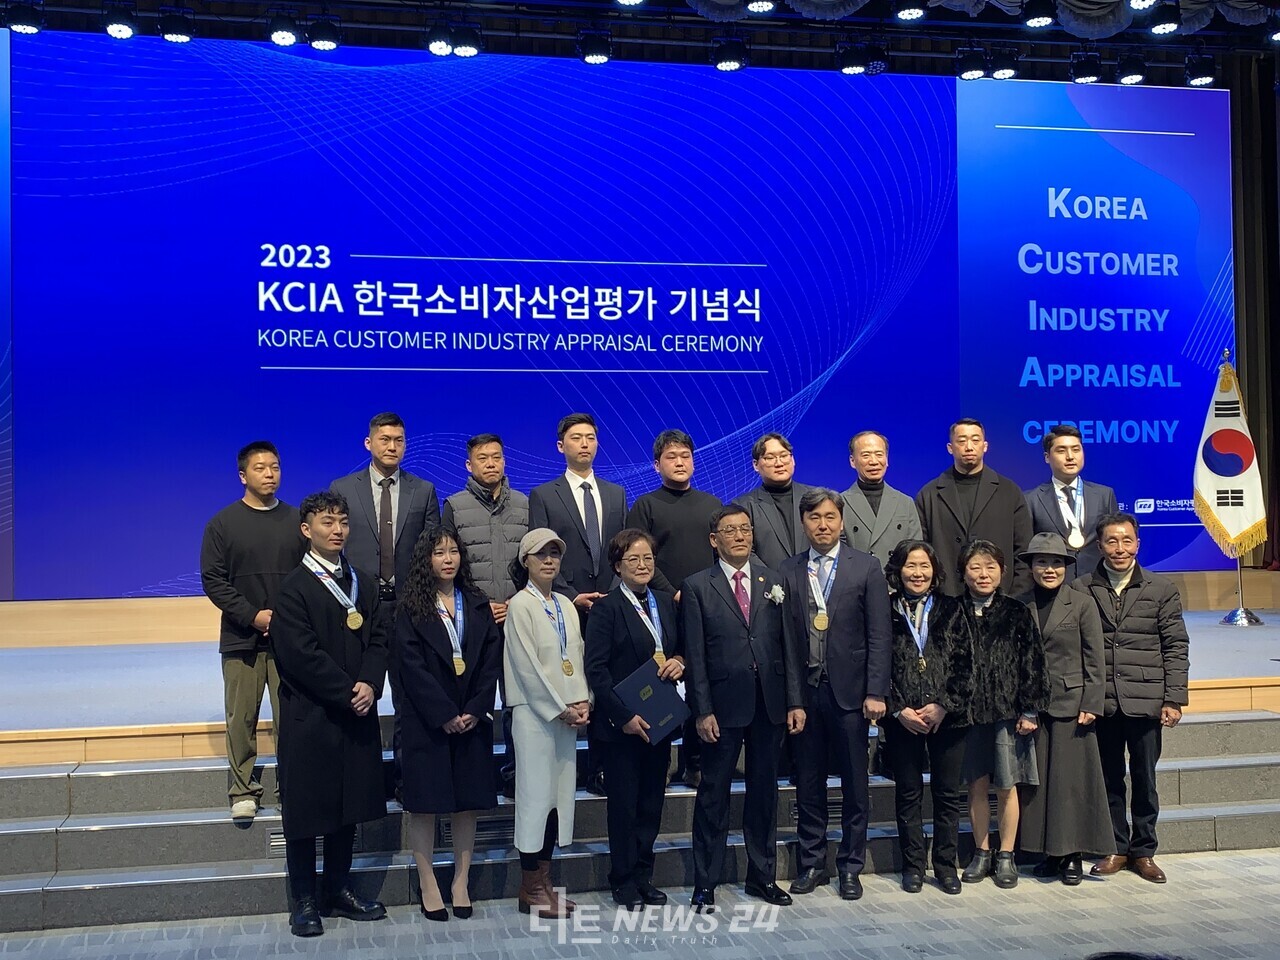 이날 진행된 KCIA 한국소비자산업평가 기념식 모습. 